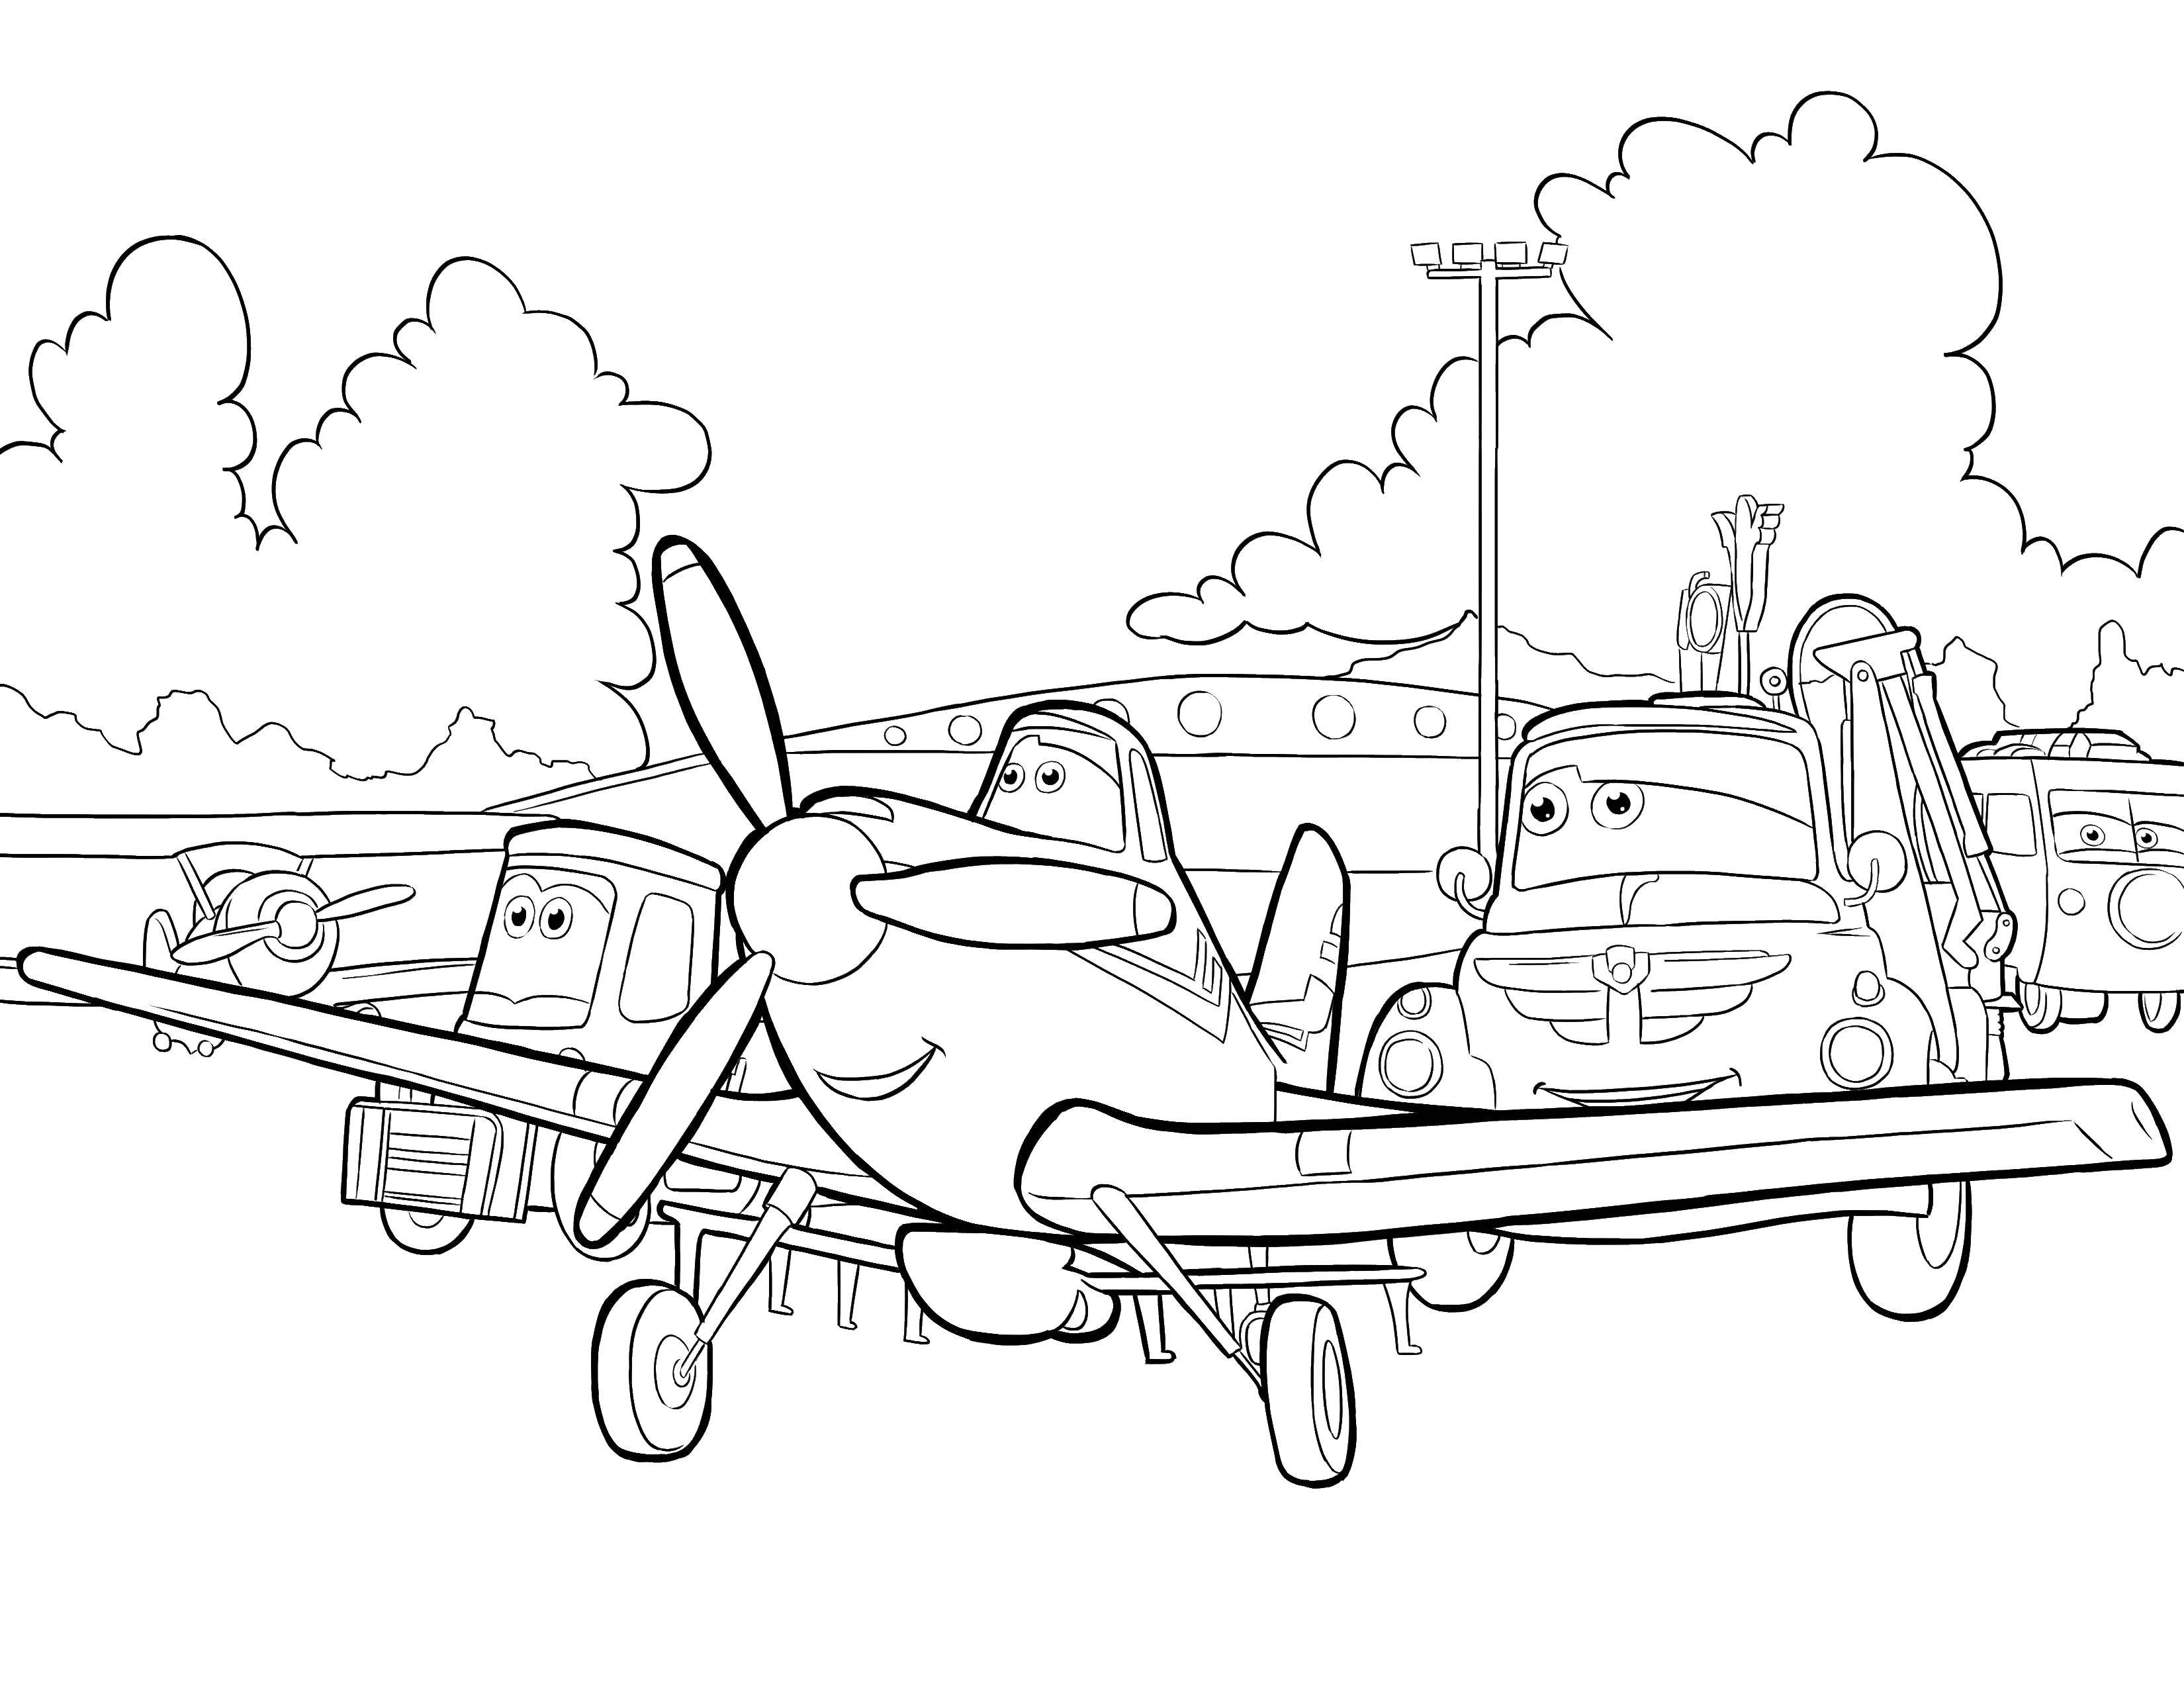 Раскраскидля мальчиков по мультфильму тачки  Самолет и машины